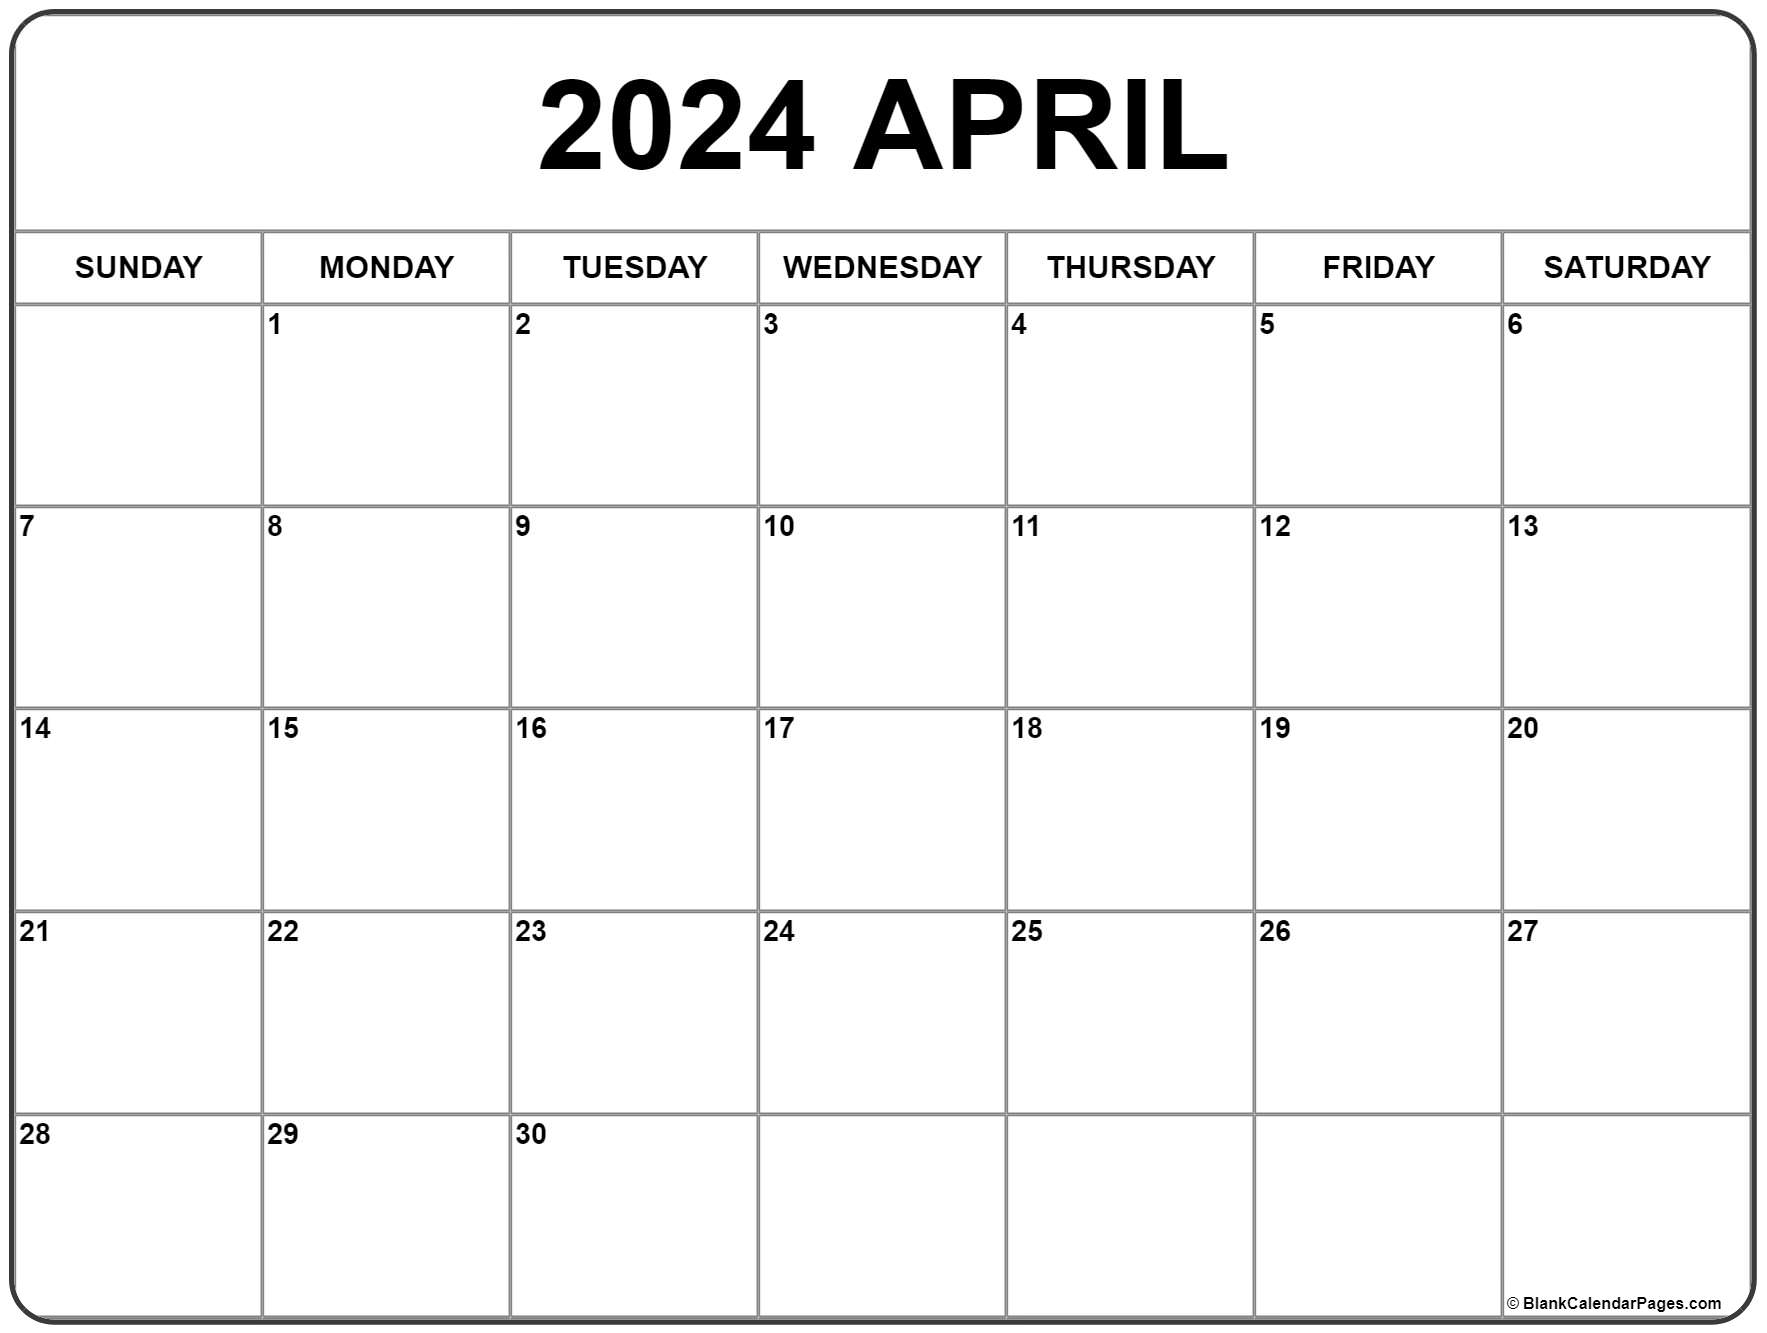 April 2024 Calendar | Free Printable Calendar for Free Printable Calendar 2024 April